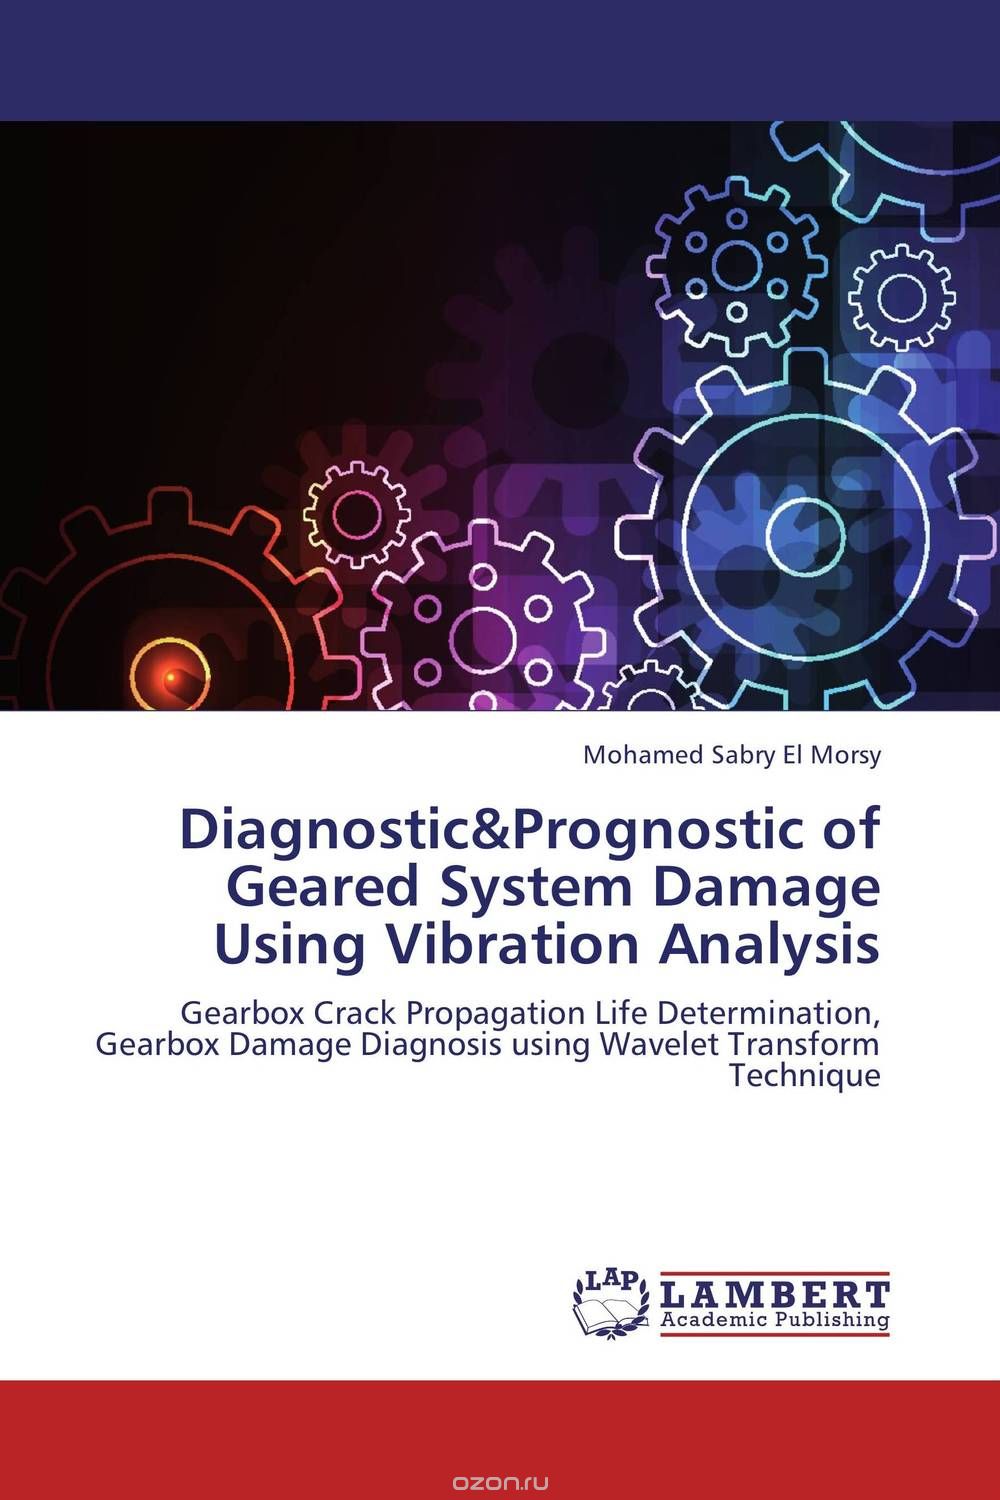 Скачать книгу "Diagnostic&Prognostic of Geared System Damage Using Vibration Analysis"